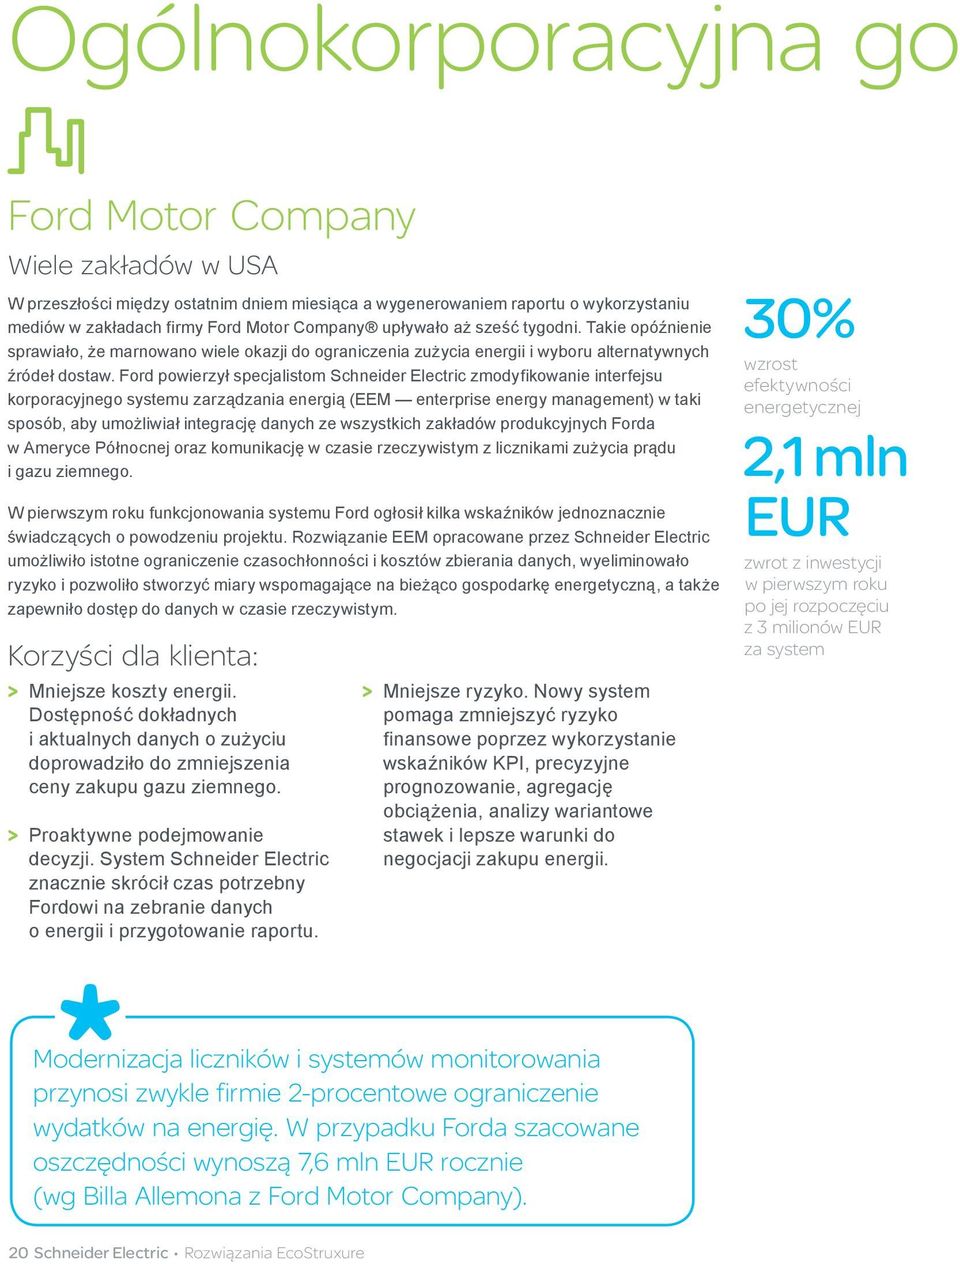 Ford powierzył specjalistom Schneider Electric zmodyfikowanie interfejsu korporacyjnego systemu zarządzania energią (EEM enterprise energy management) w taki sposób, aby umożliwiał integrację danych